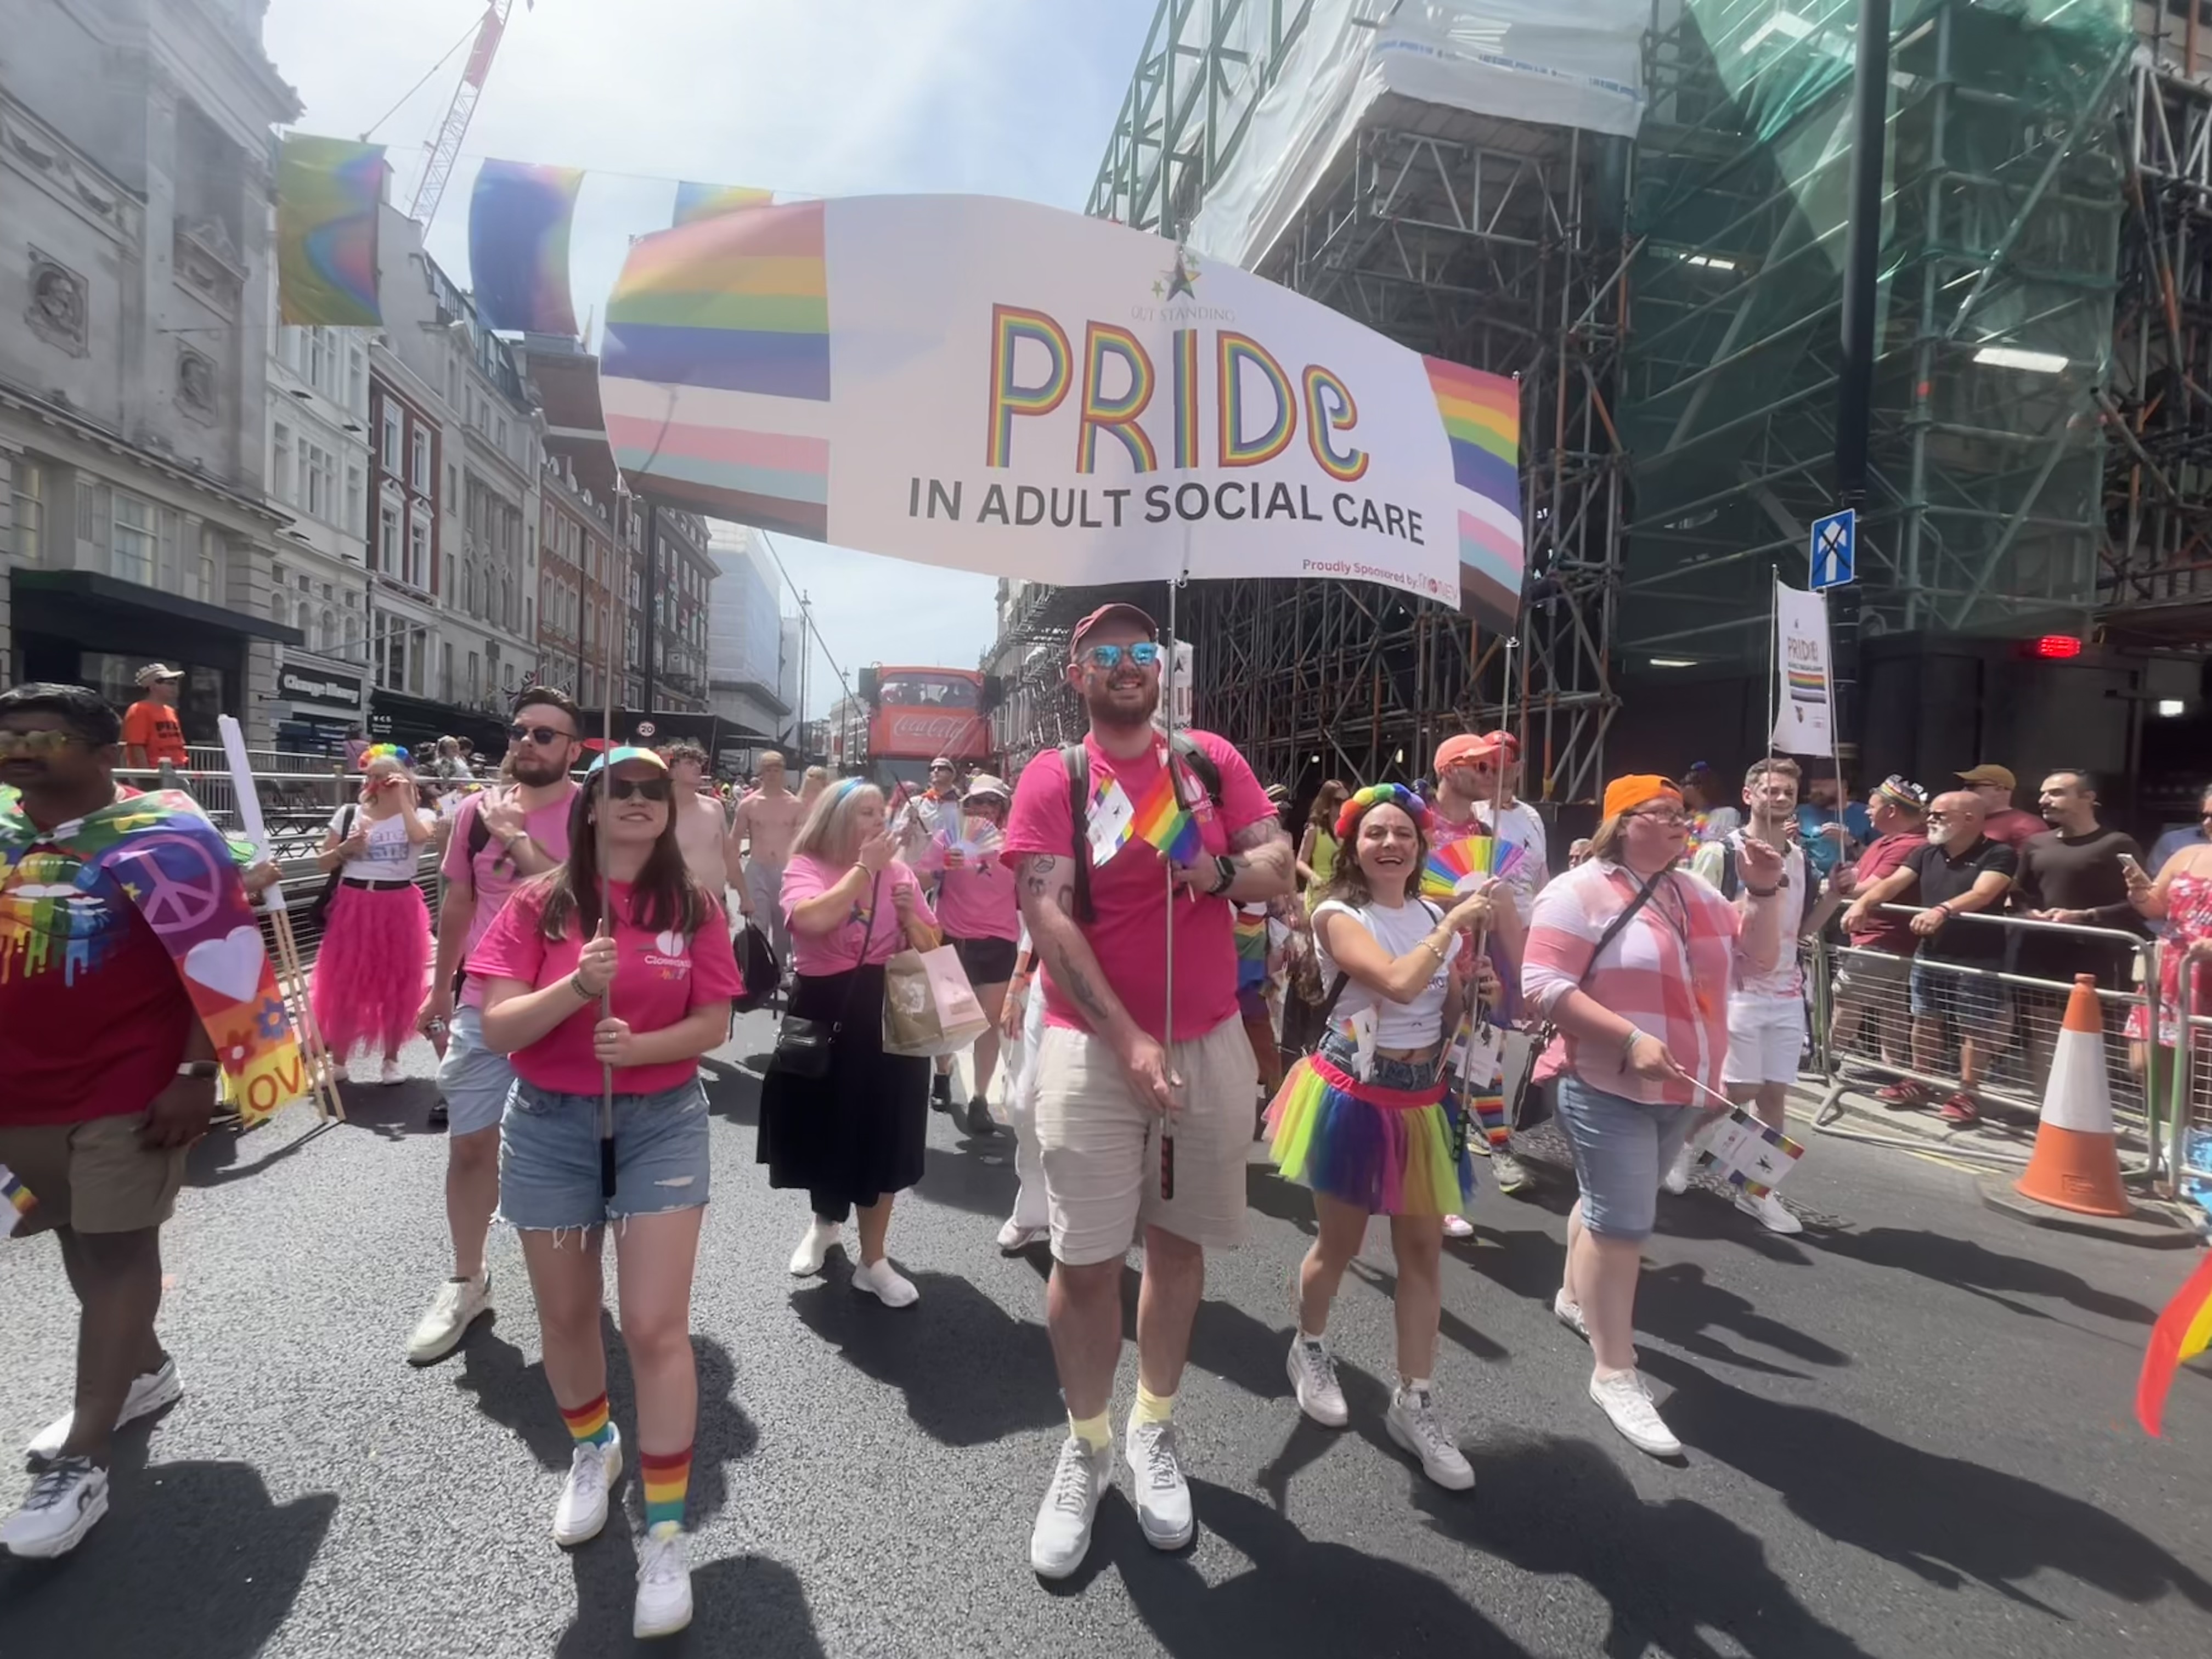 Celebrating diversity in social care at London Pride